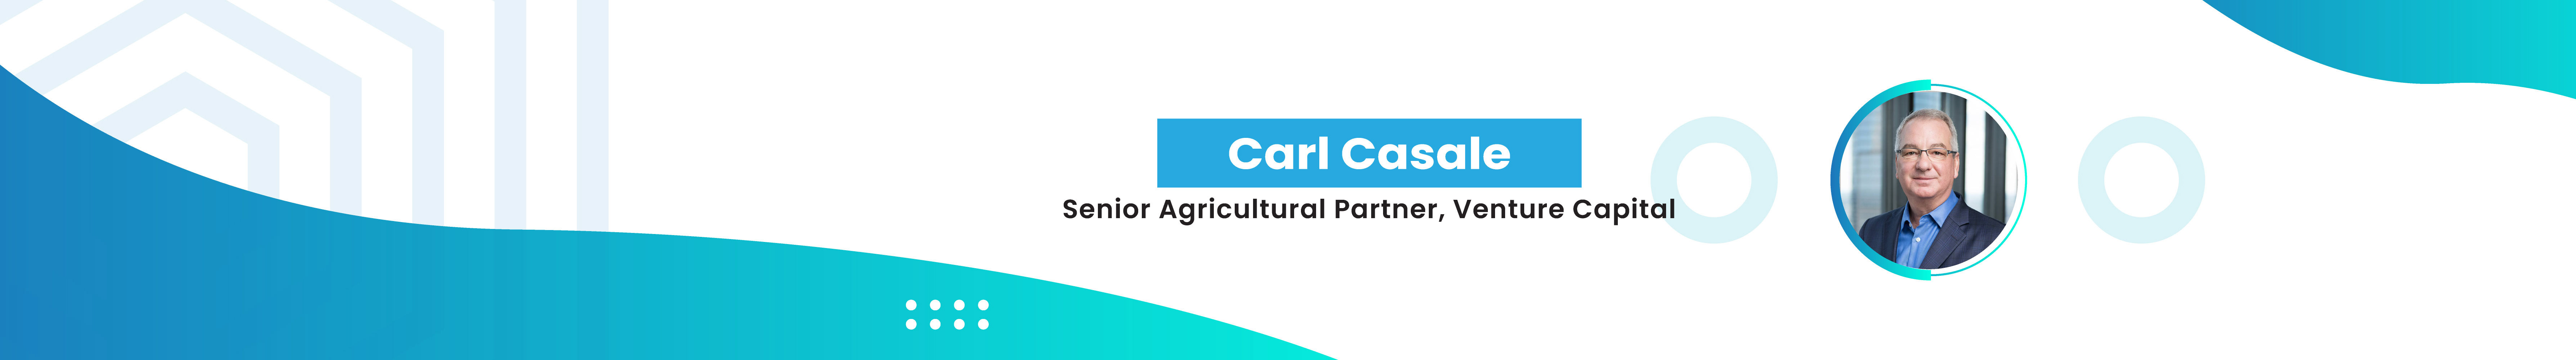 Carl Casale's profile banner